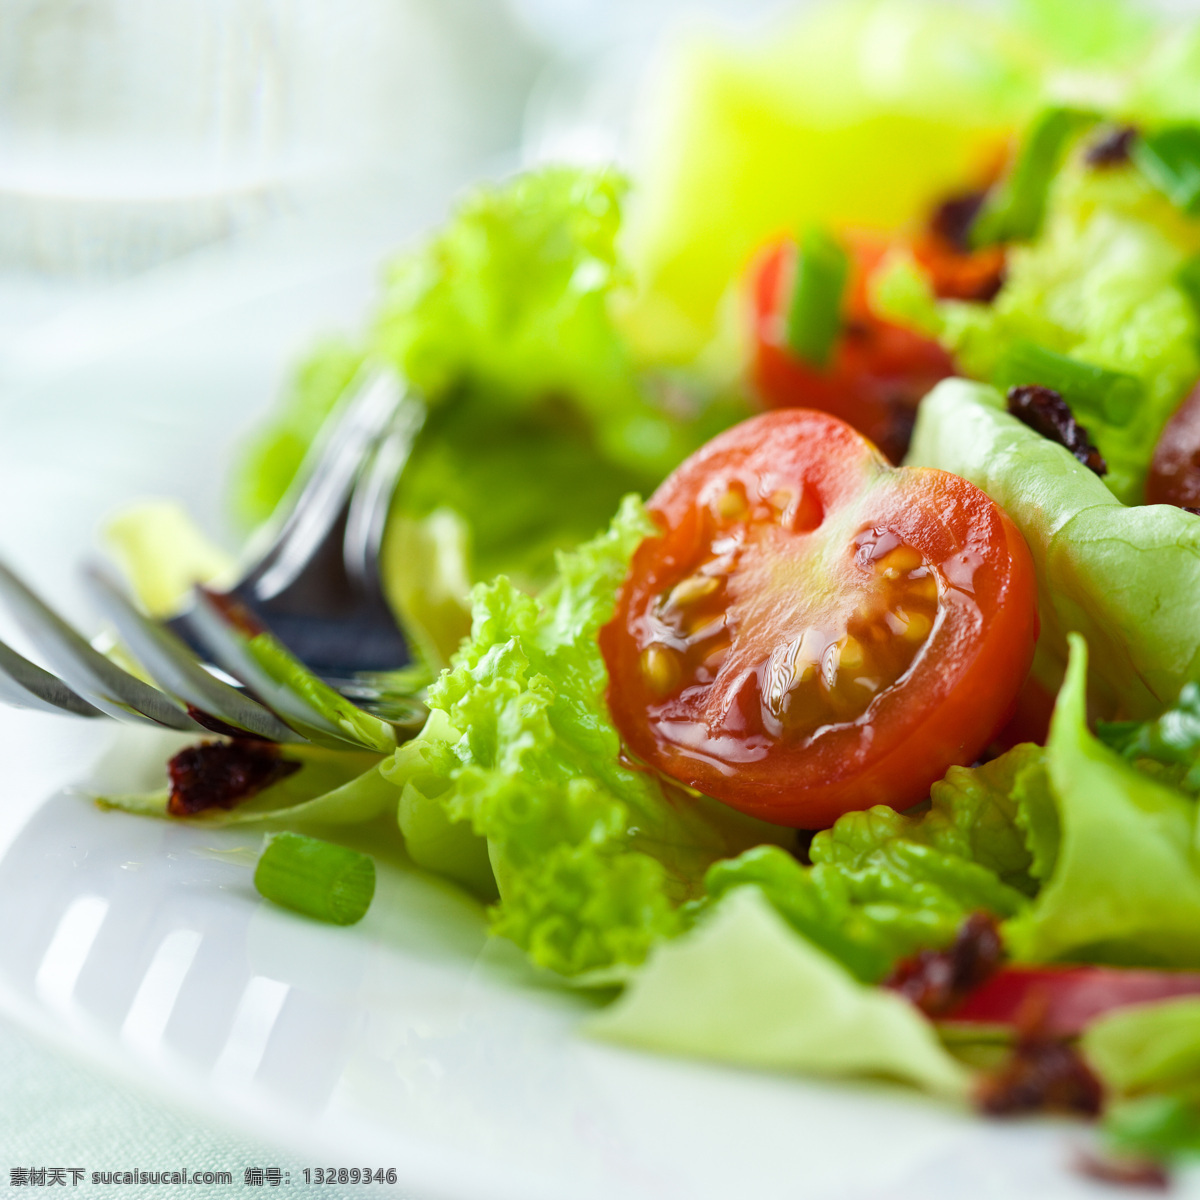 番茄 生菜 沙拉 西红柿 蔬菜沙拉 美食 美味 食物摄影 水果蔬菜 餐饮美食 蔬菜图片